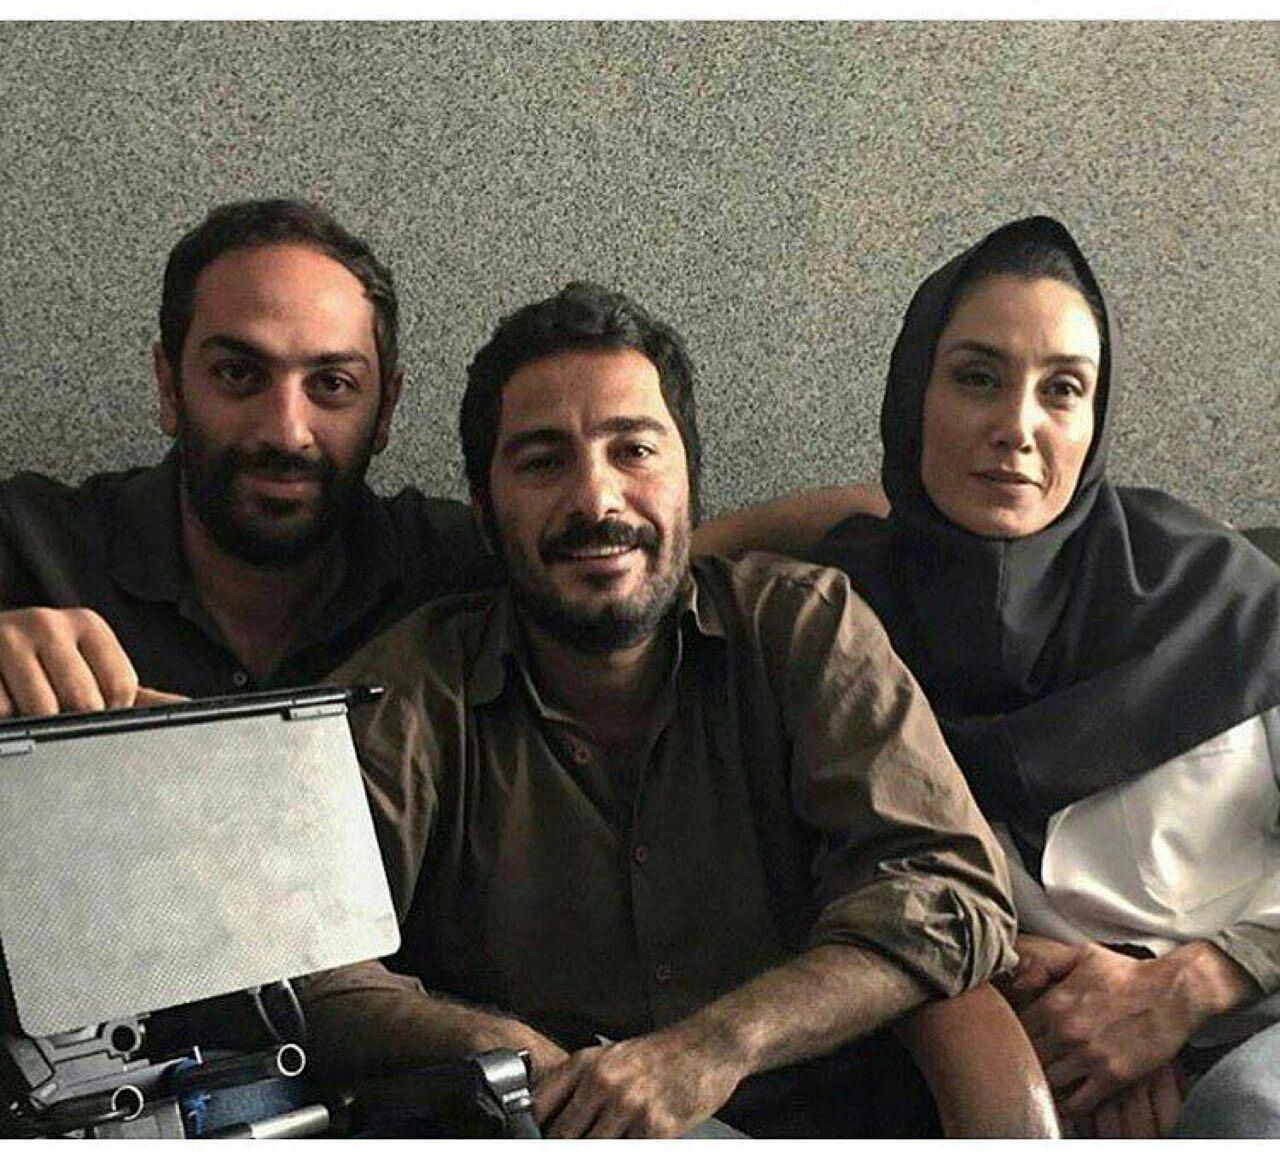 تصویر/ هدیه تهرانی و نوید محمدزاده در پشت صحنه یک فیلم